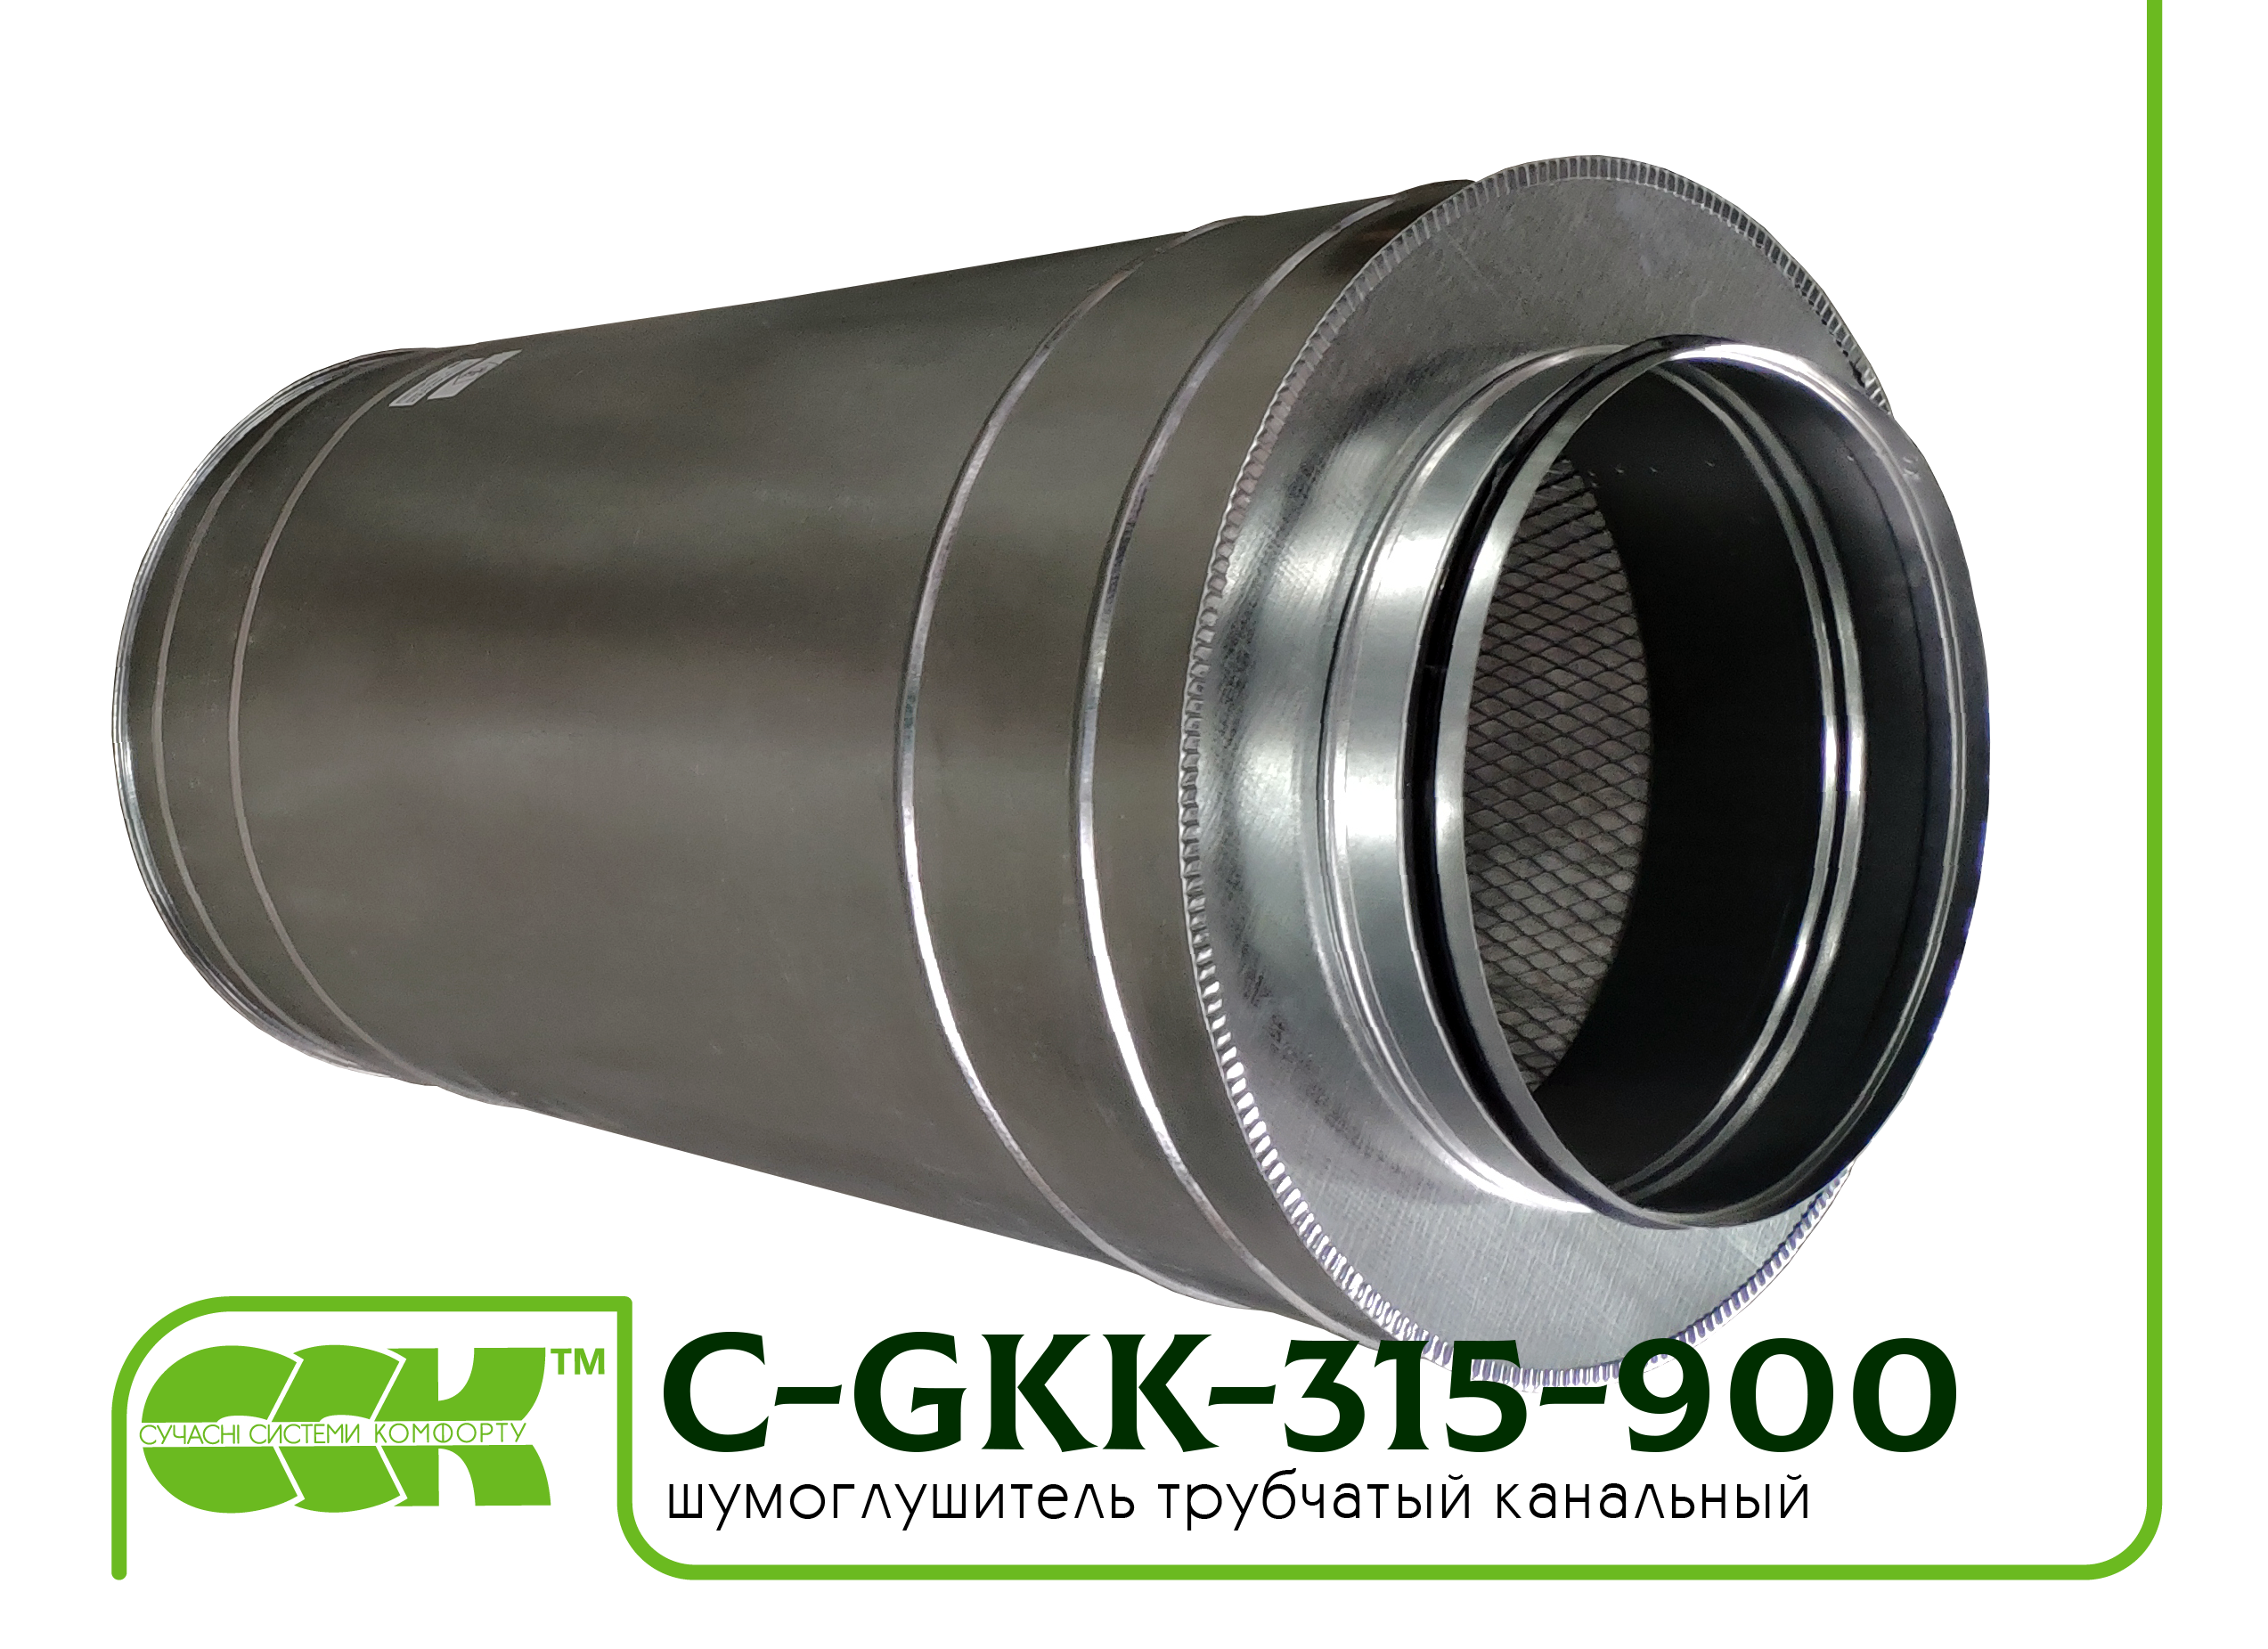 Шумоглушитель трубчатый для круглых каналов C-GKK-315-900